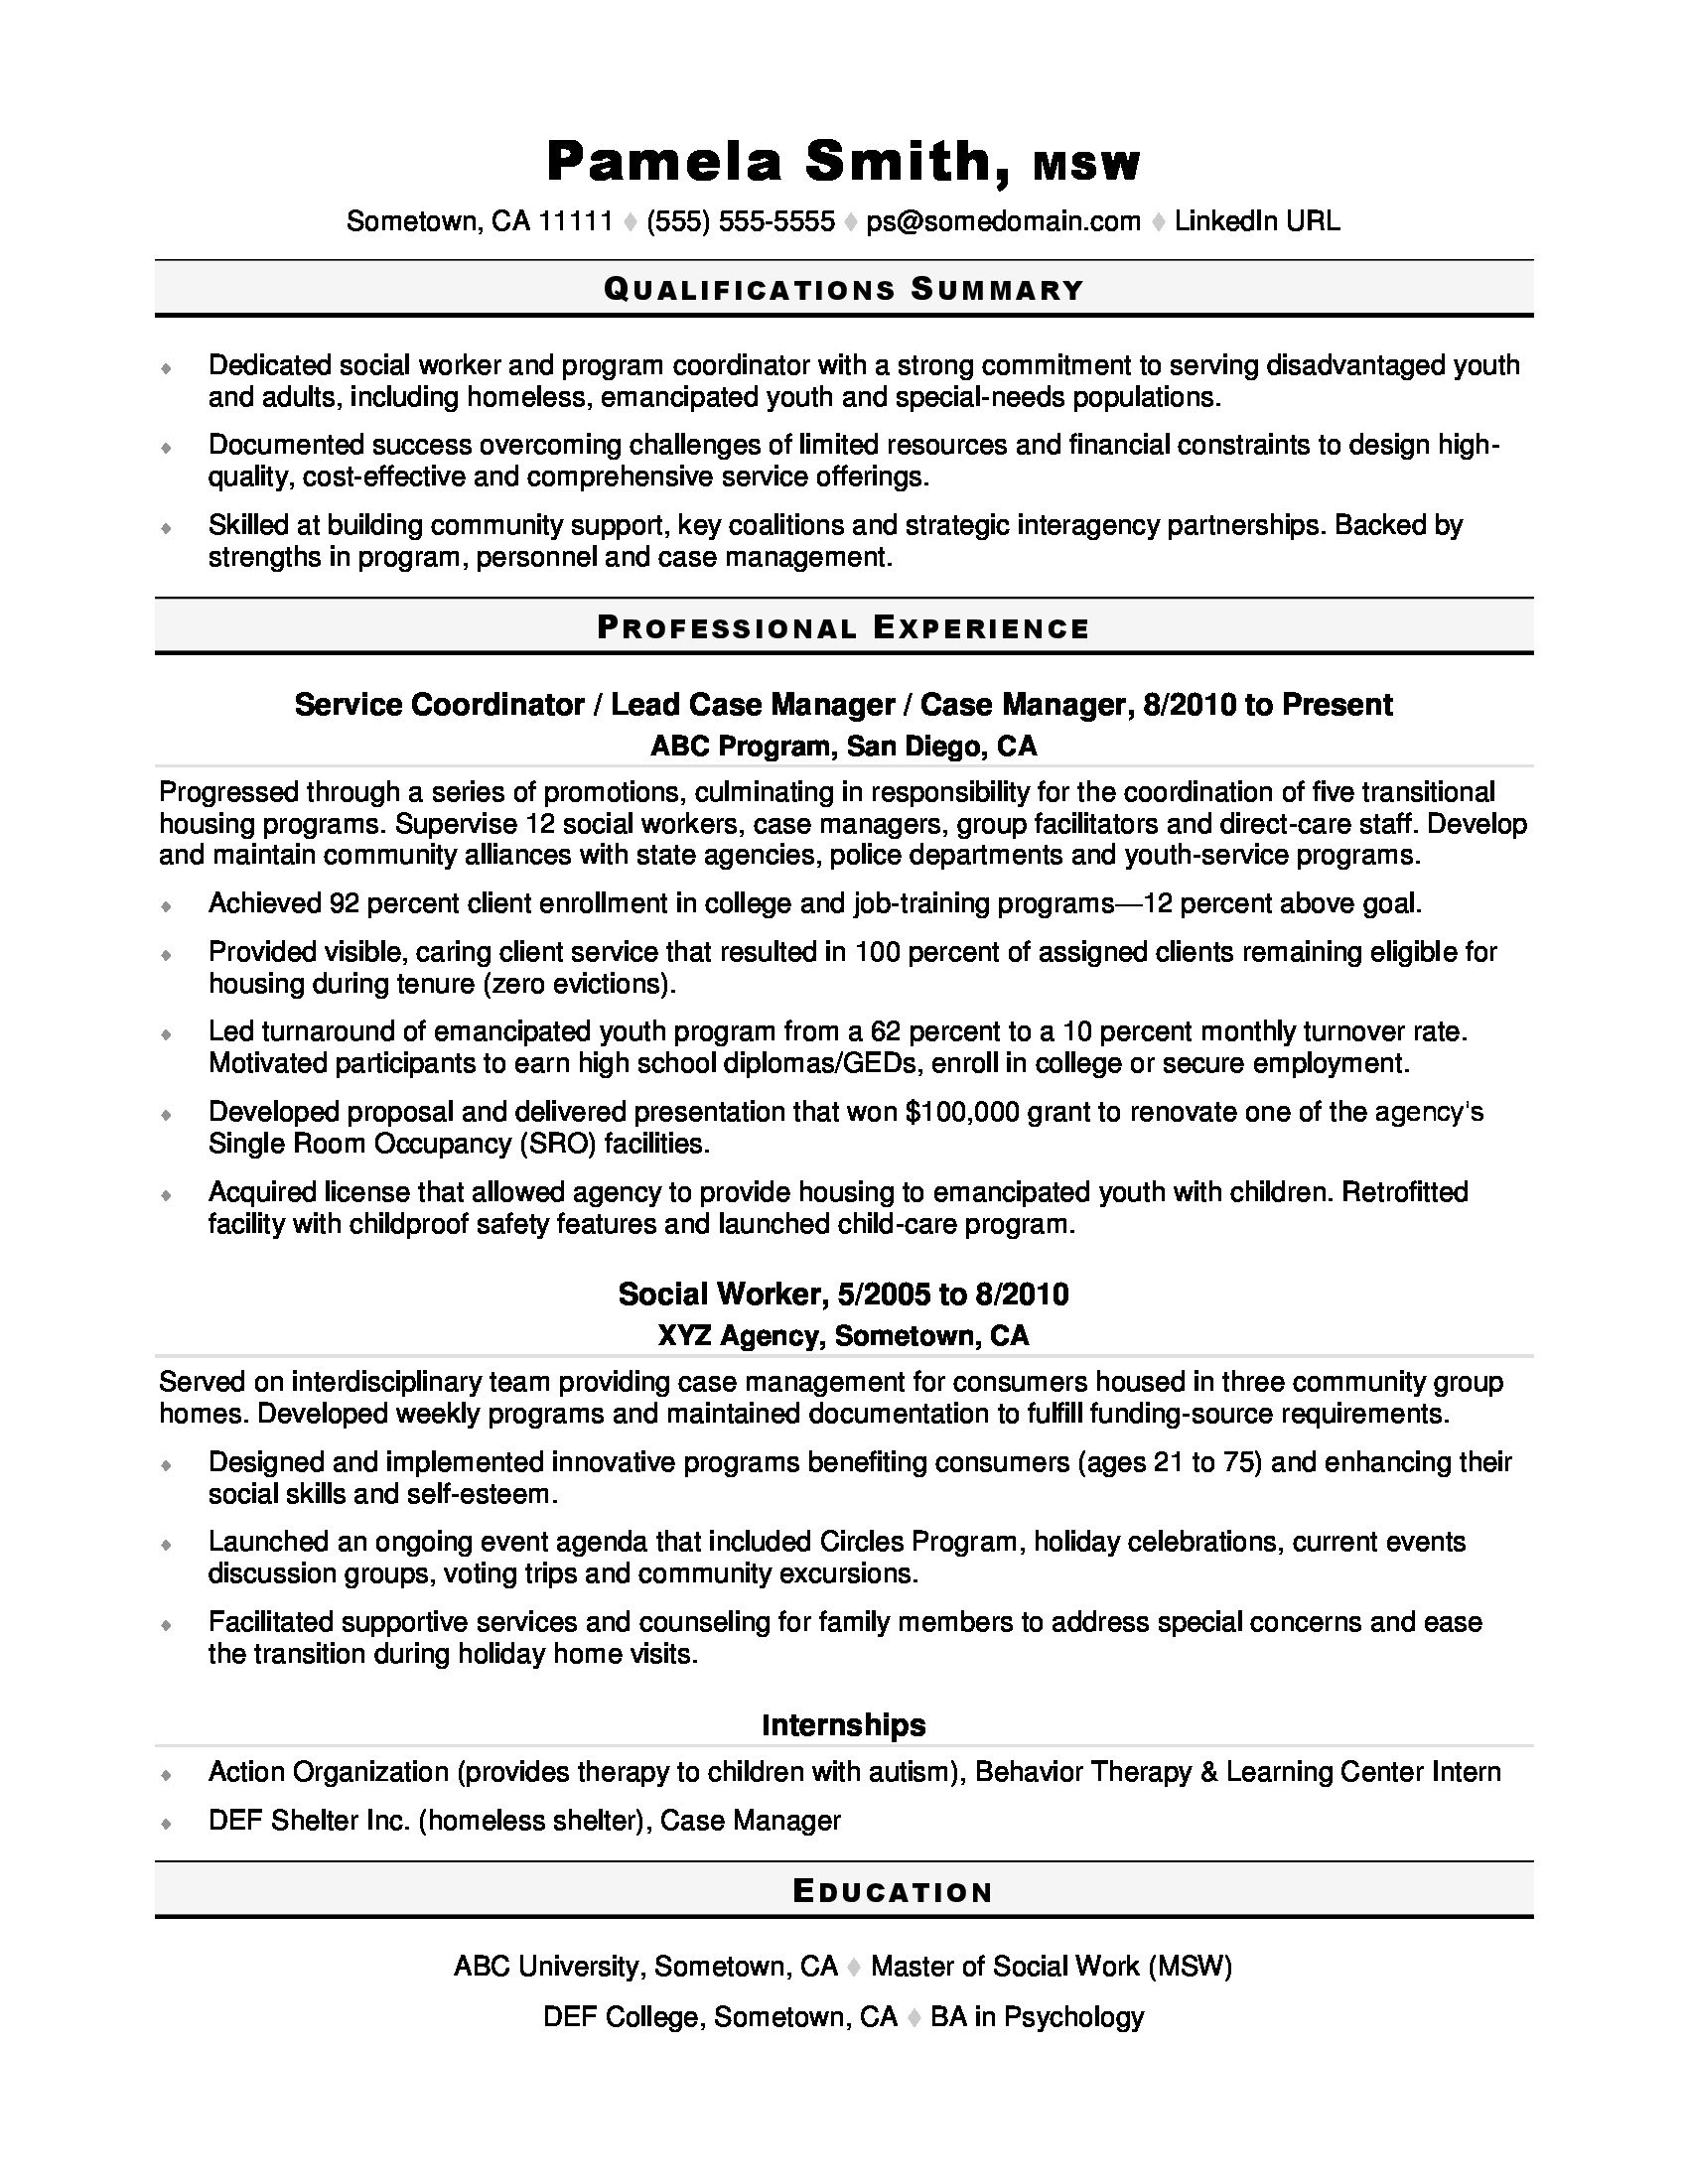 Sample Resumes for School social Worker social Work Resume Monster.com